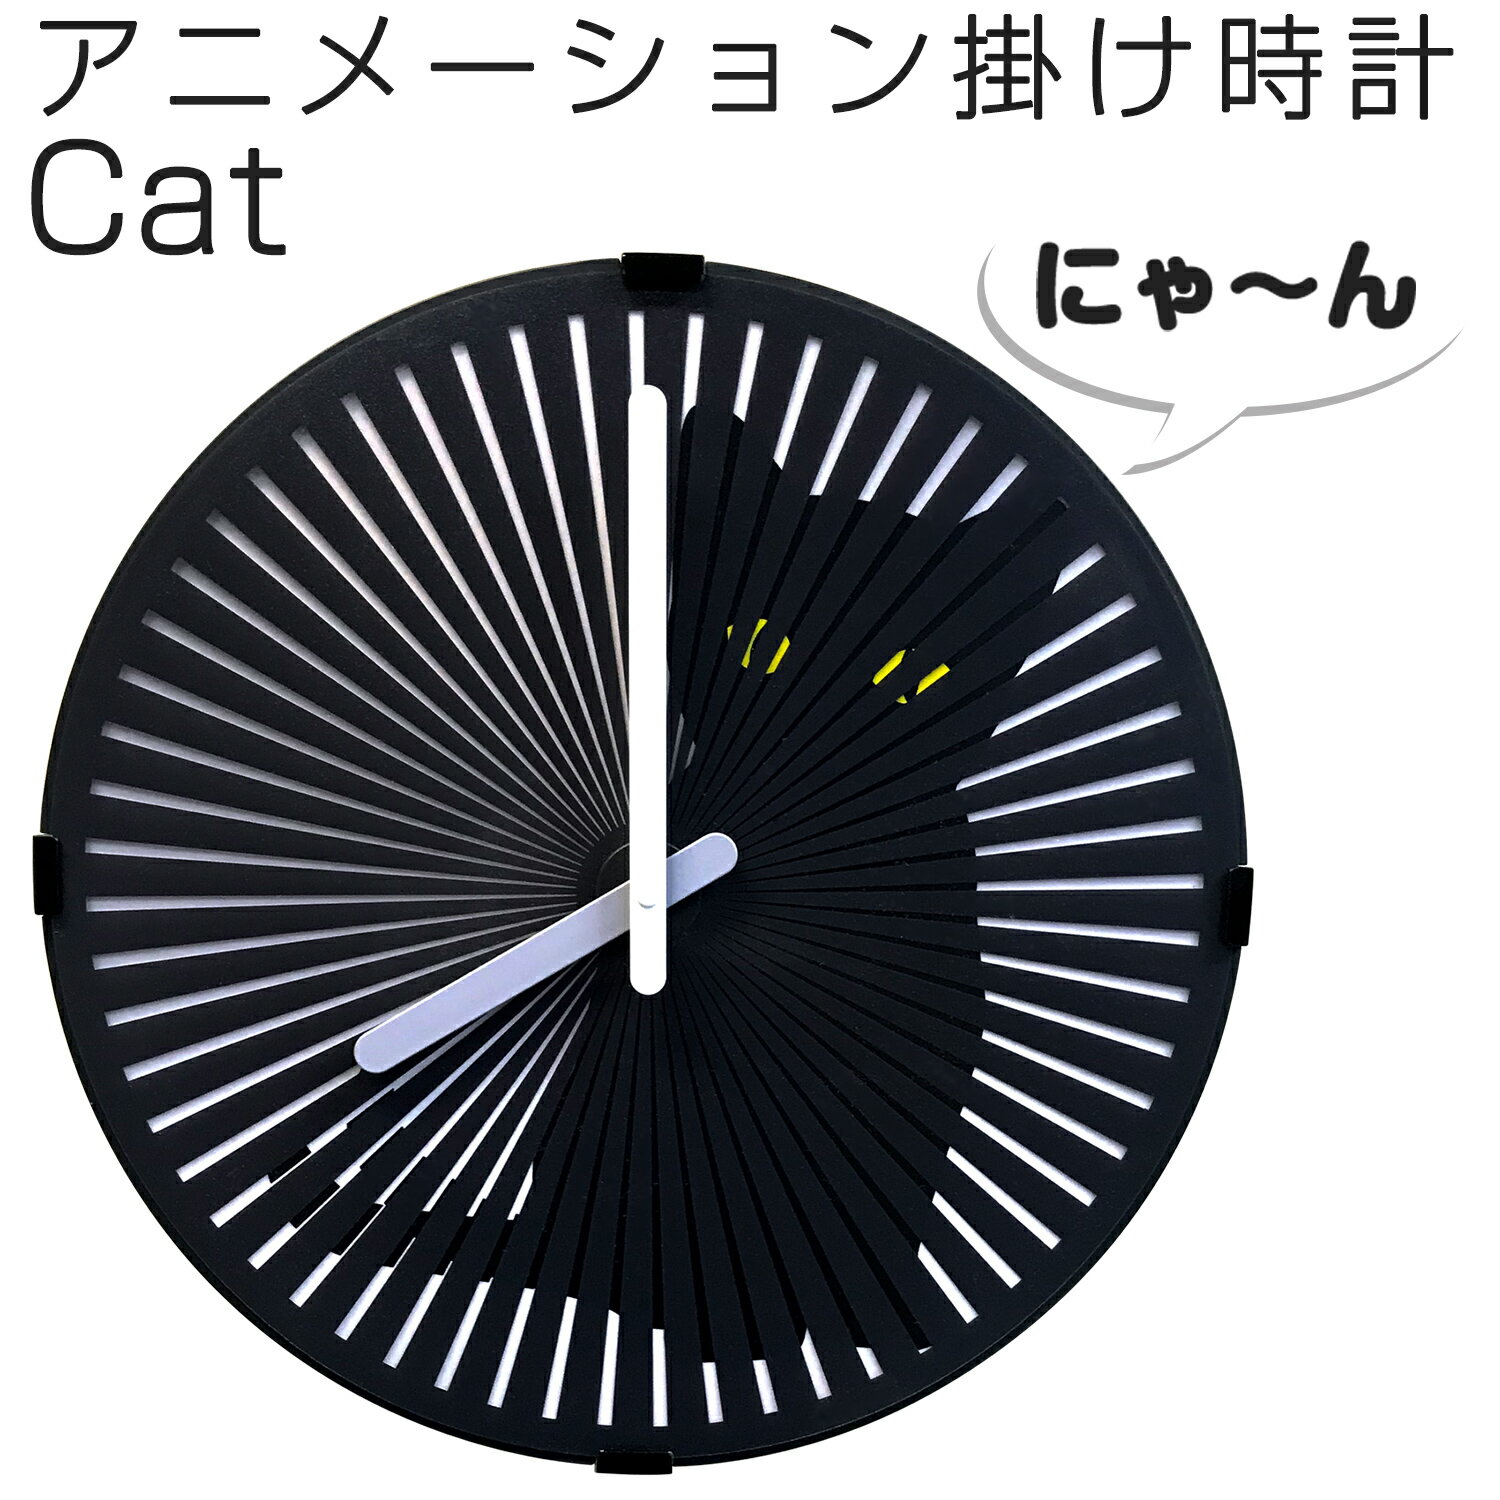 からくり時計 掛け時計 スリットアニメーション 【 EM-G135-C 】 Cat 黒猫 タイムシグナル 時報 壁掛け時計 インテリア時計 からくり時計 動く時計 パラパラ 北欧 モダン おしゃれ おすすめ